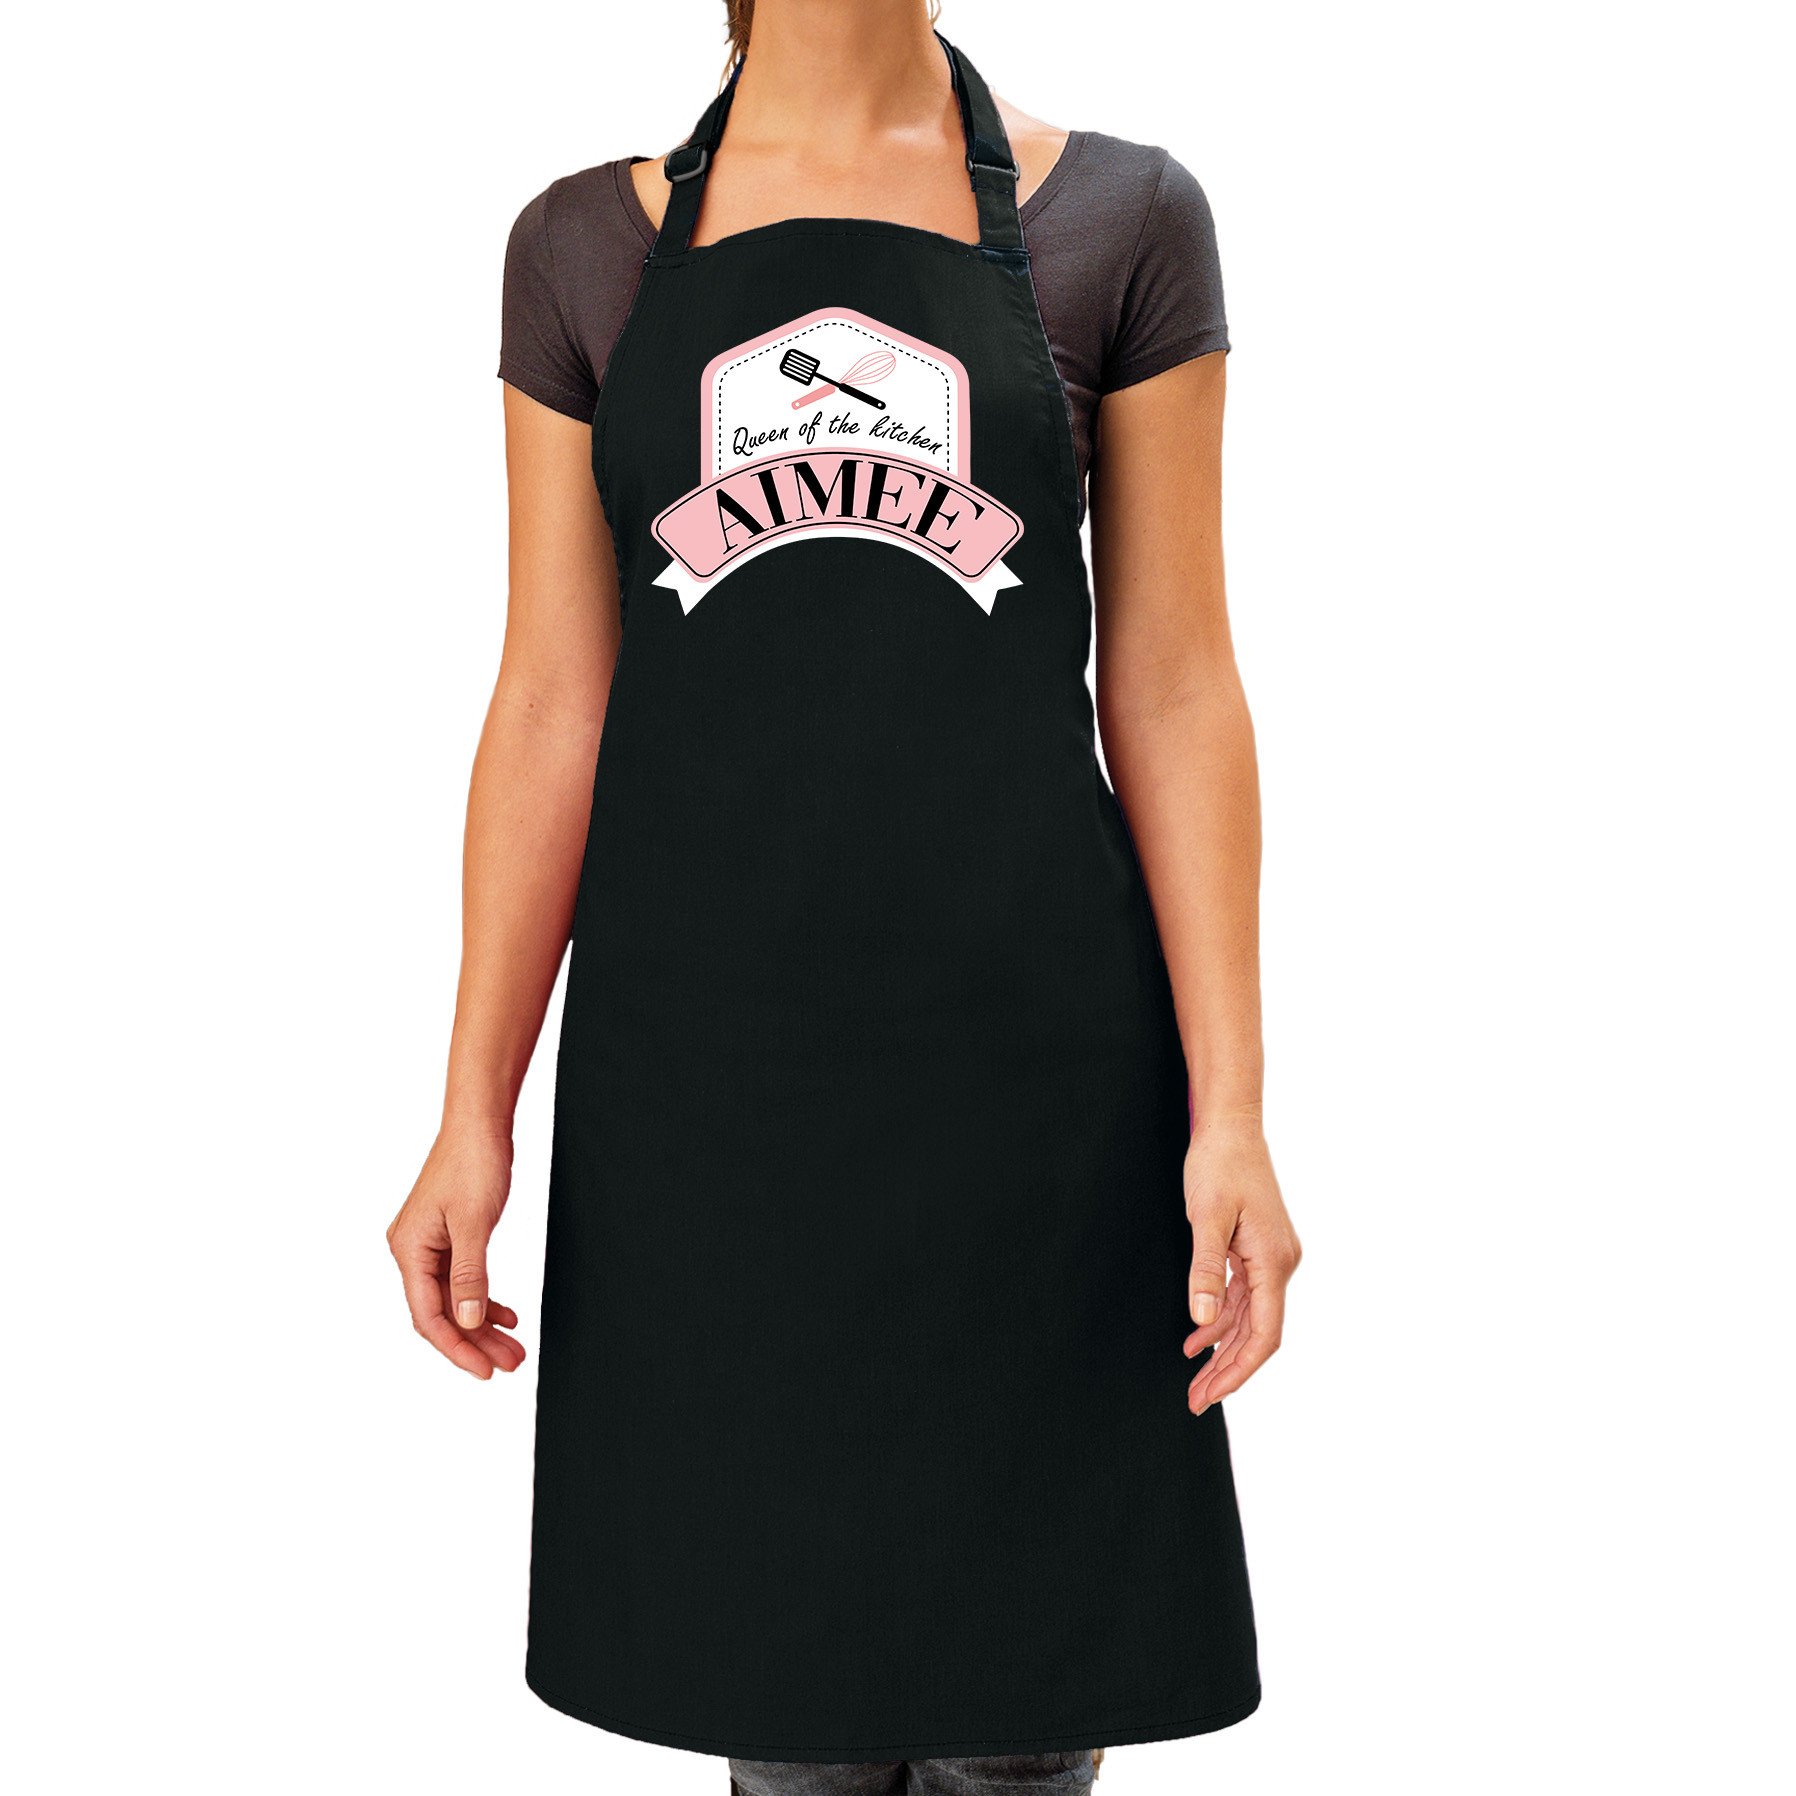 Naam cadeau Aimee - Queen of the kitchen schort zwart - keukenschort cadeau